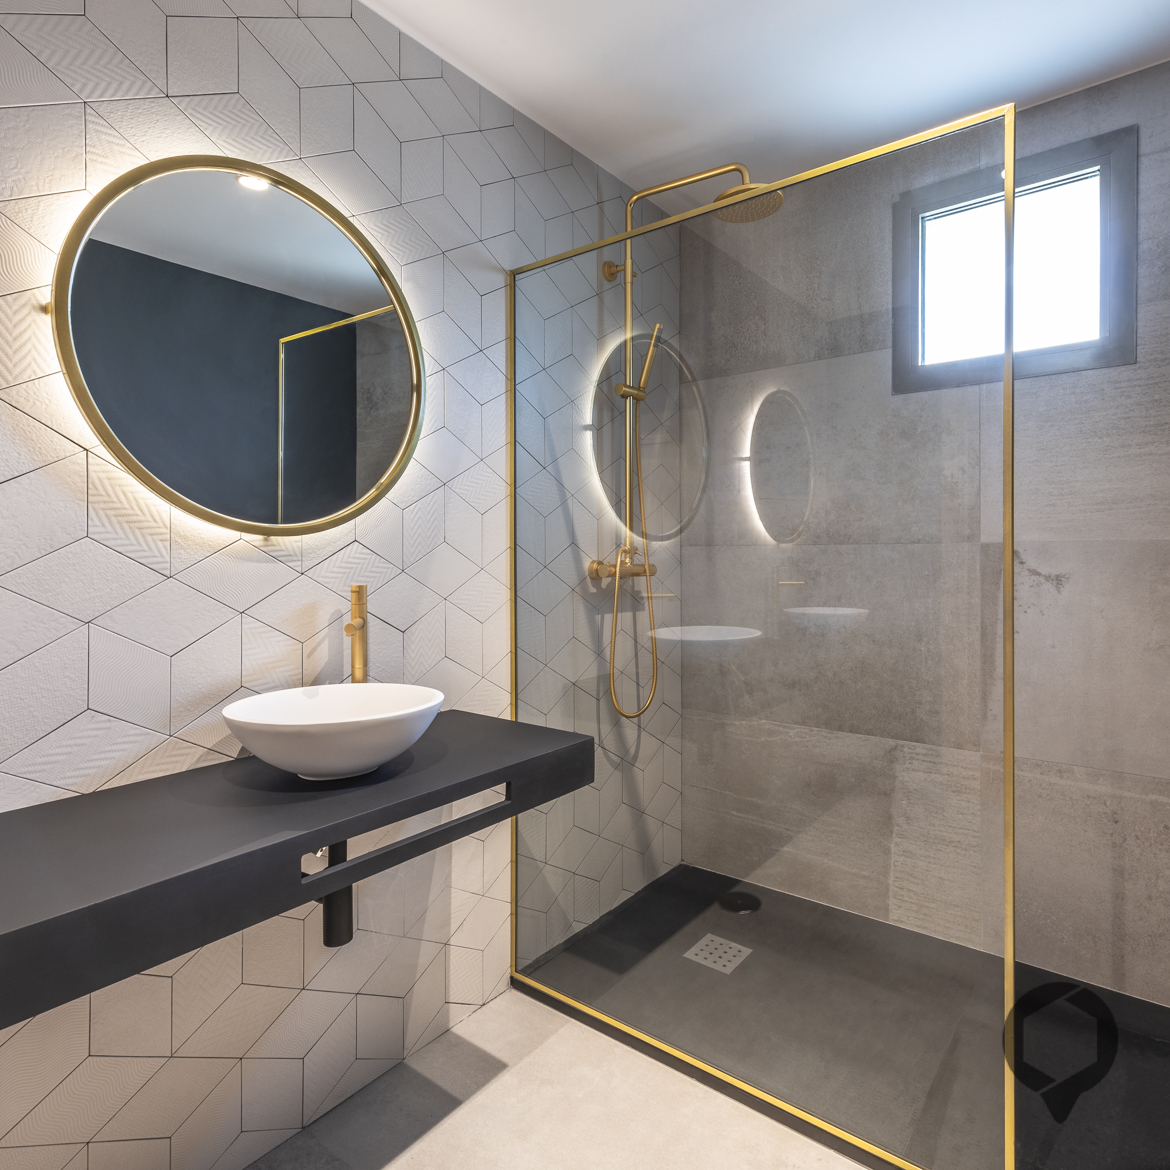 Vista de baño detalles dorados en grifería, espejos y mampara de ducha.